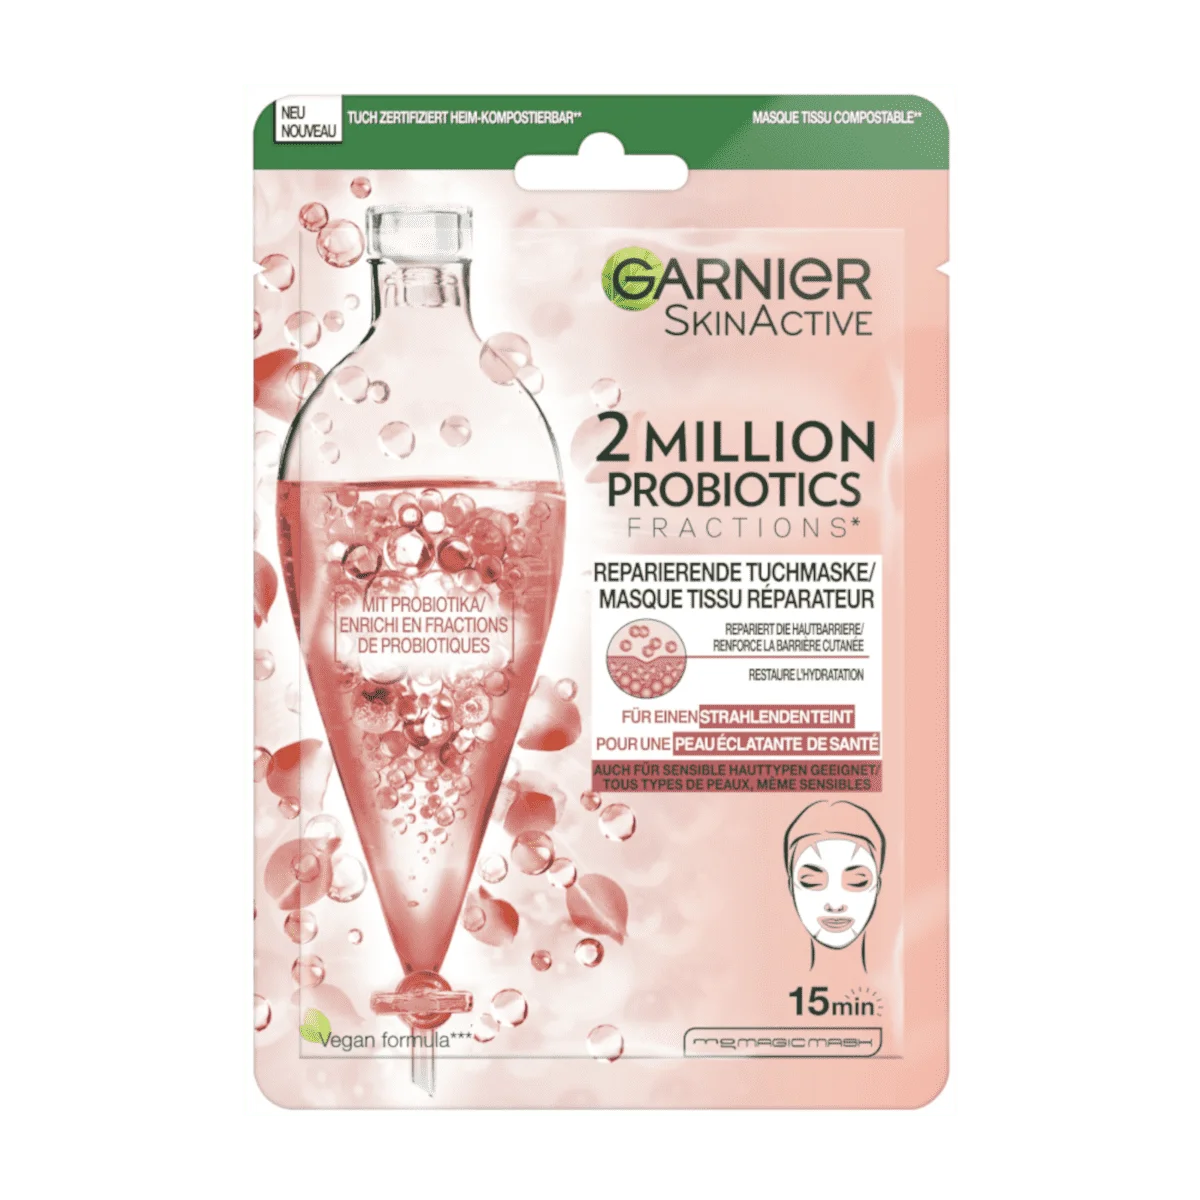 Garnier SkinActive Tuchmaske 2 Million Probiotics, 1 Stk